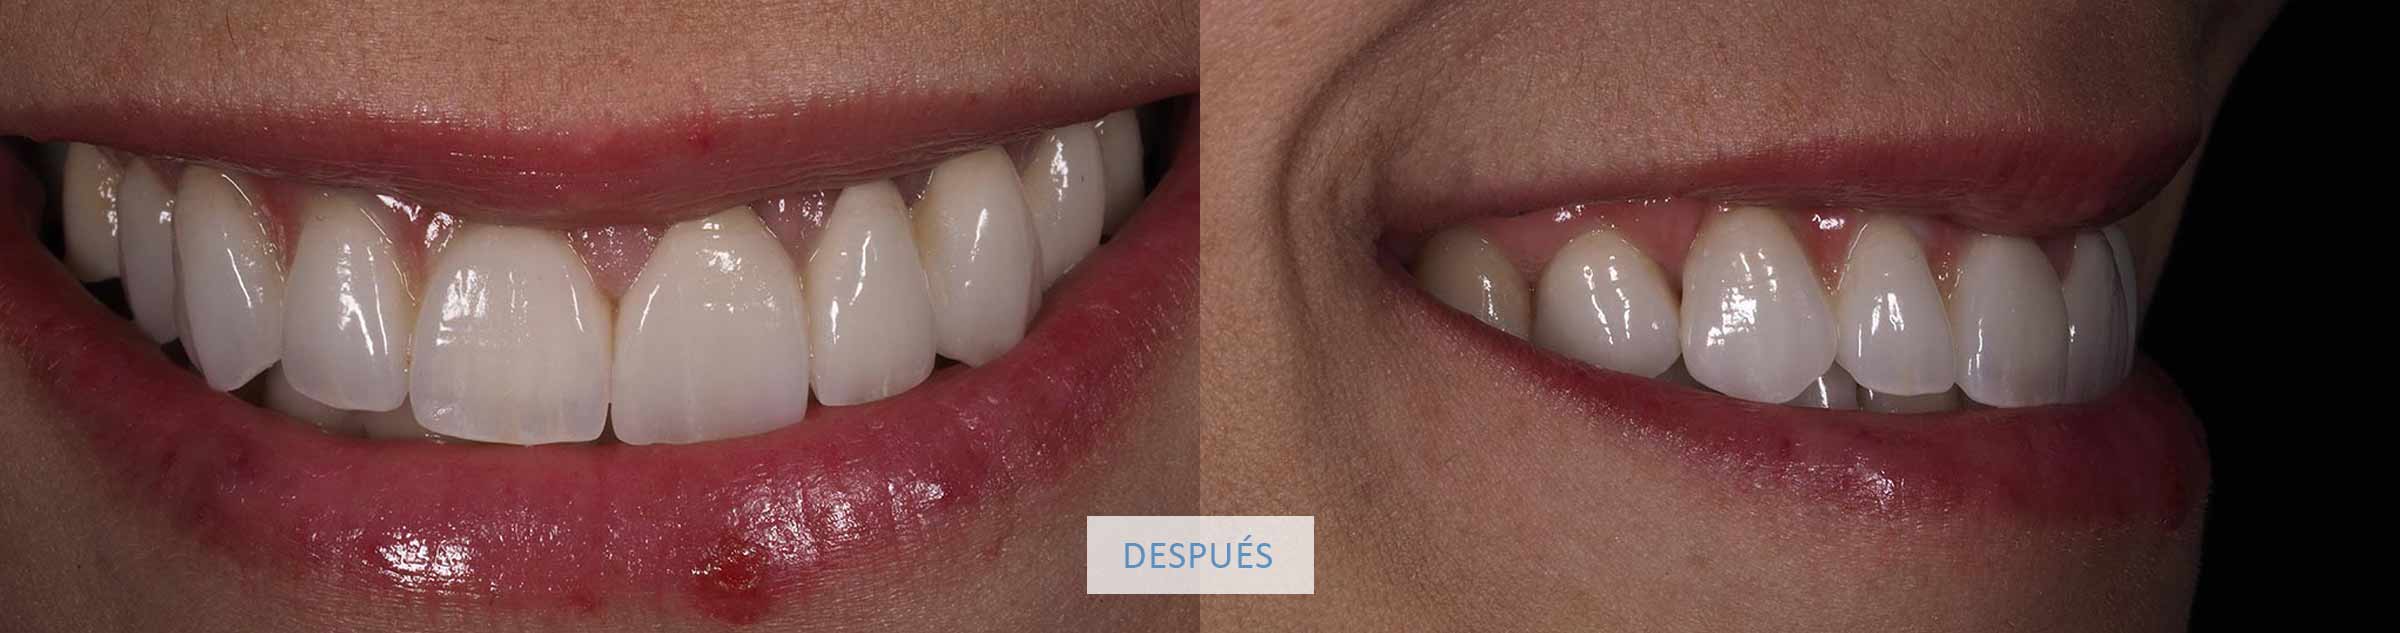 Resultado sonrisa final caso clínico coronas dentales